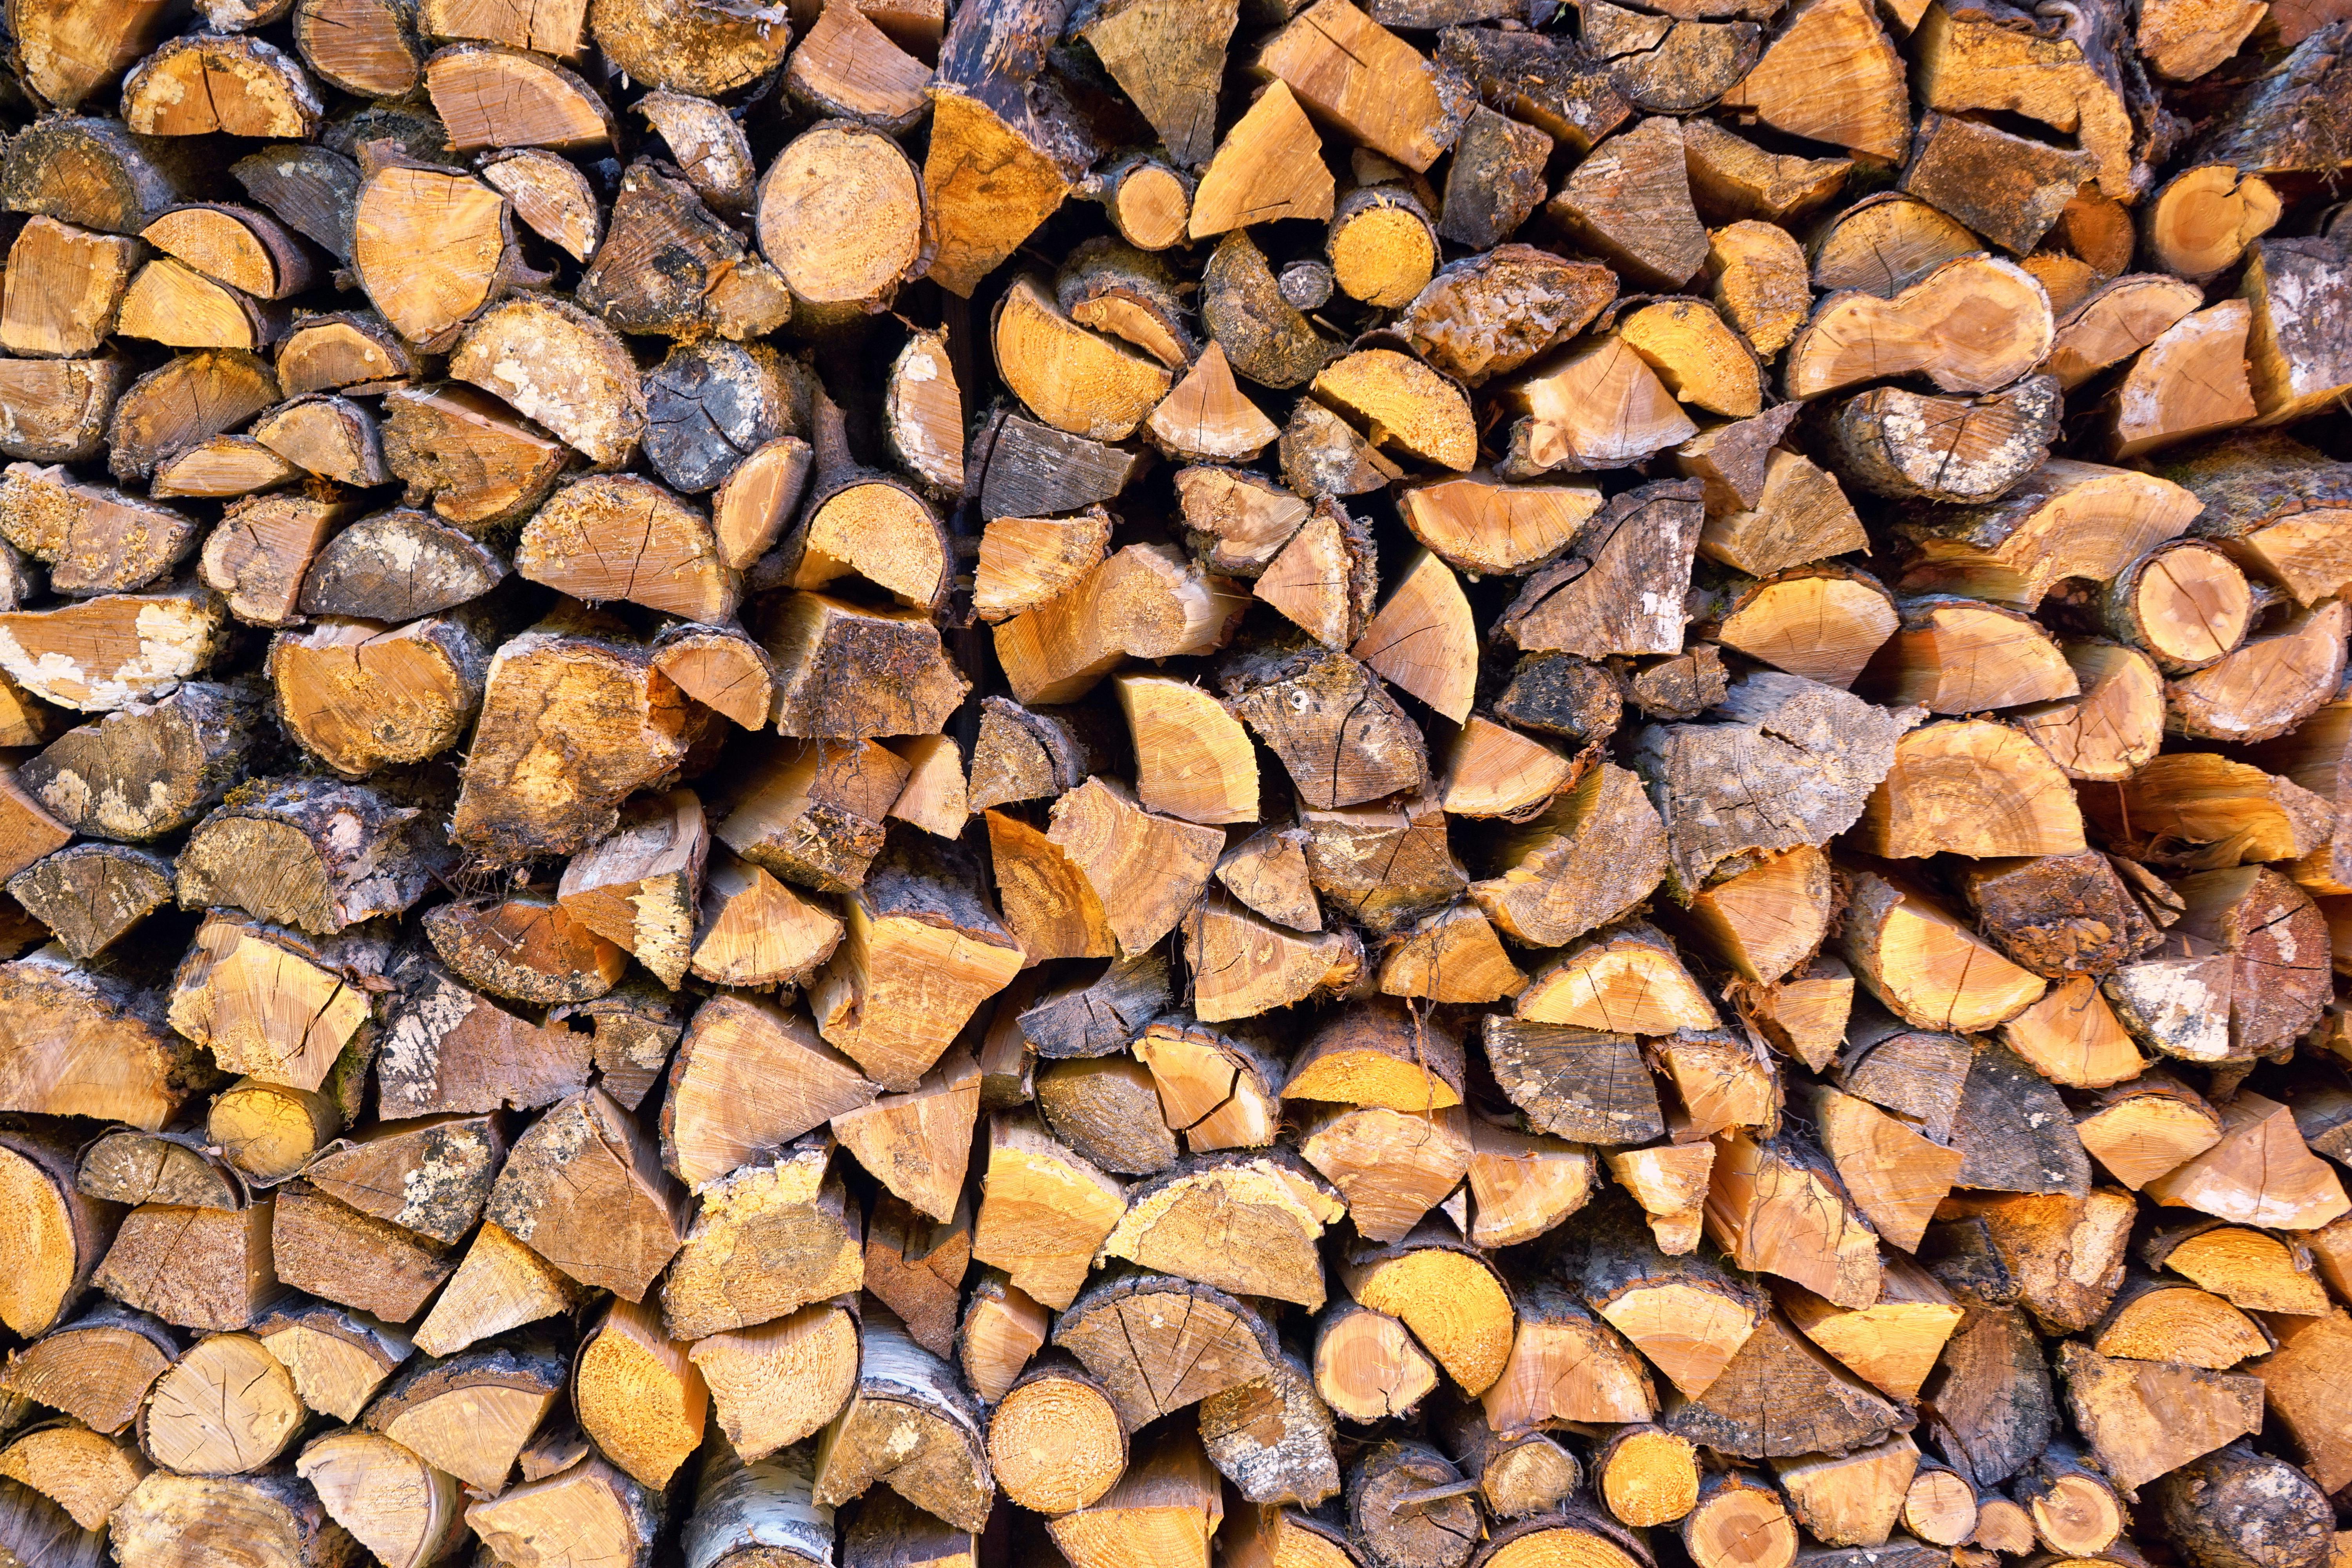 Pile de bois de chauffage devant une maison de village Stock Photo